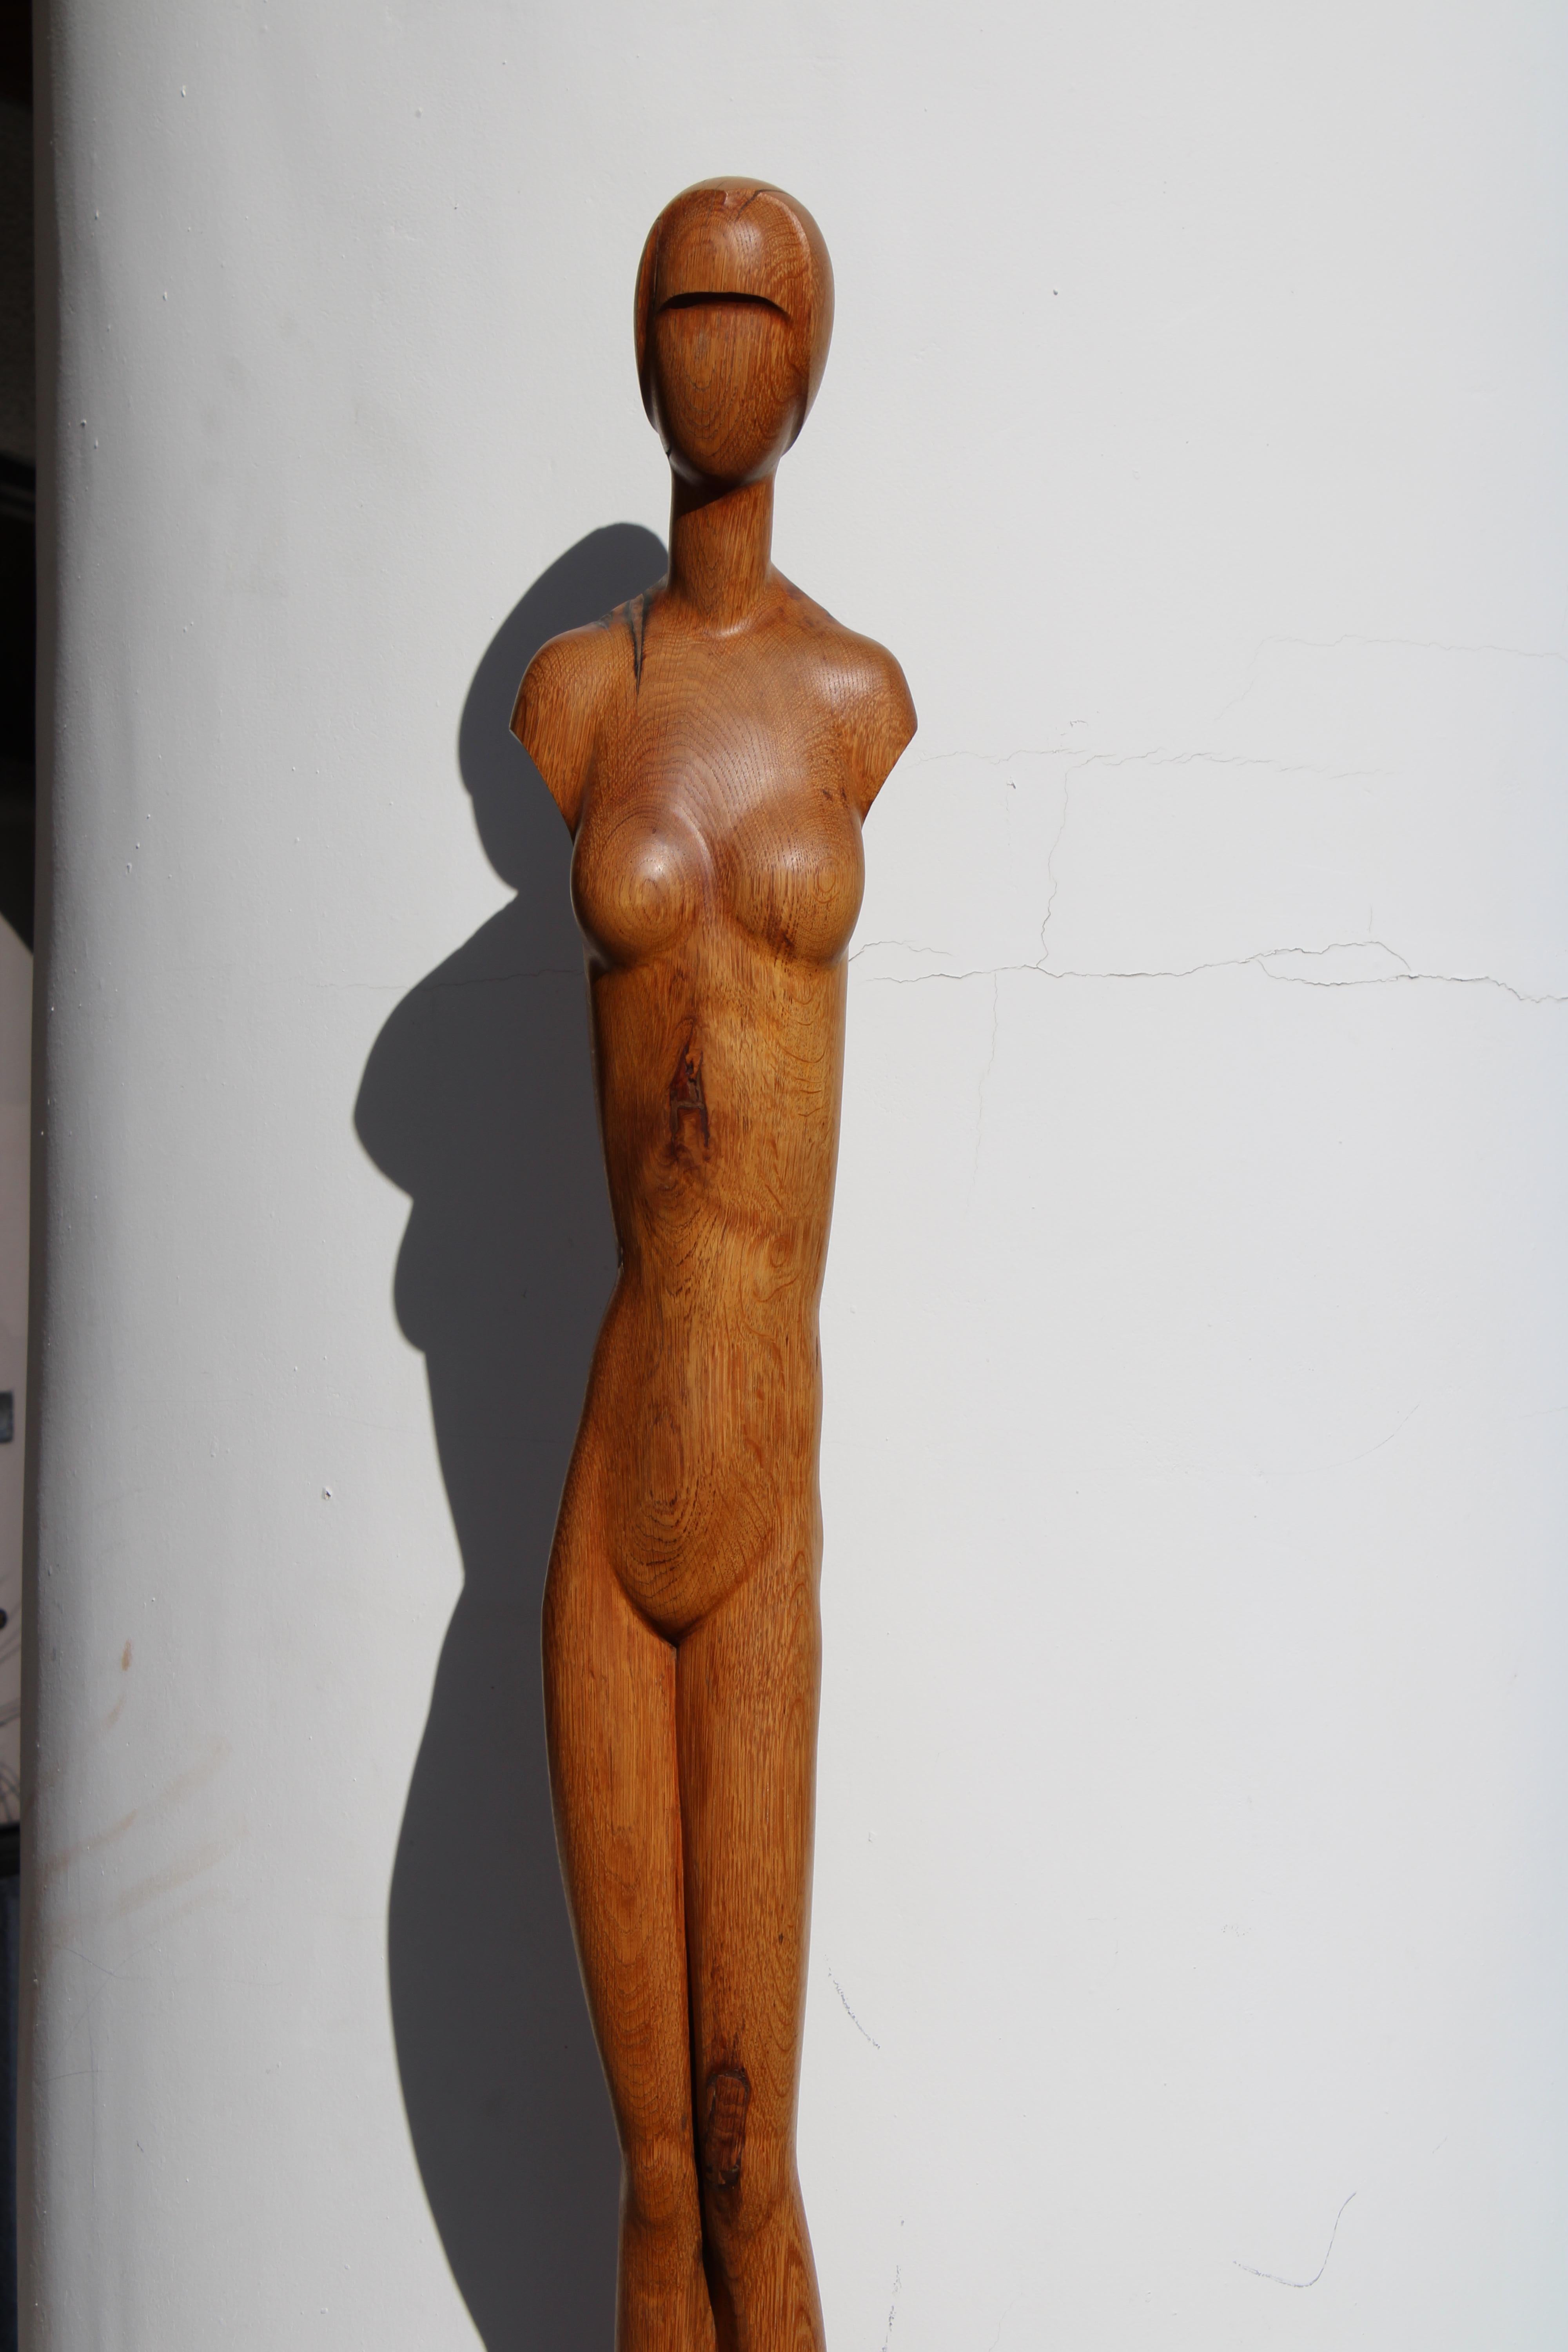 Monumentale sechs Fuß Art Deco Holzskulptur einer Frau.  Wir können zwar keine Unterschrift finden, aber was für eine Aussage.  Uns wurde gesagt, dass dieses Stück in Europa hergestellt wurde, möglicherweise in Belgien oder Frankreich.  Die